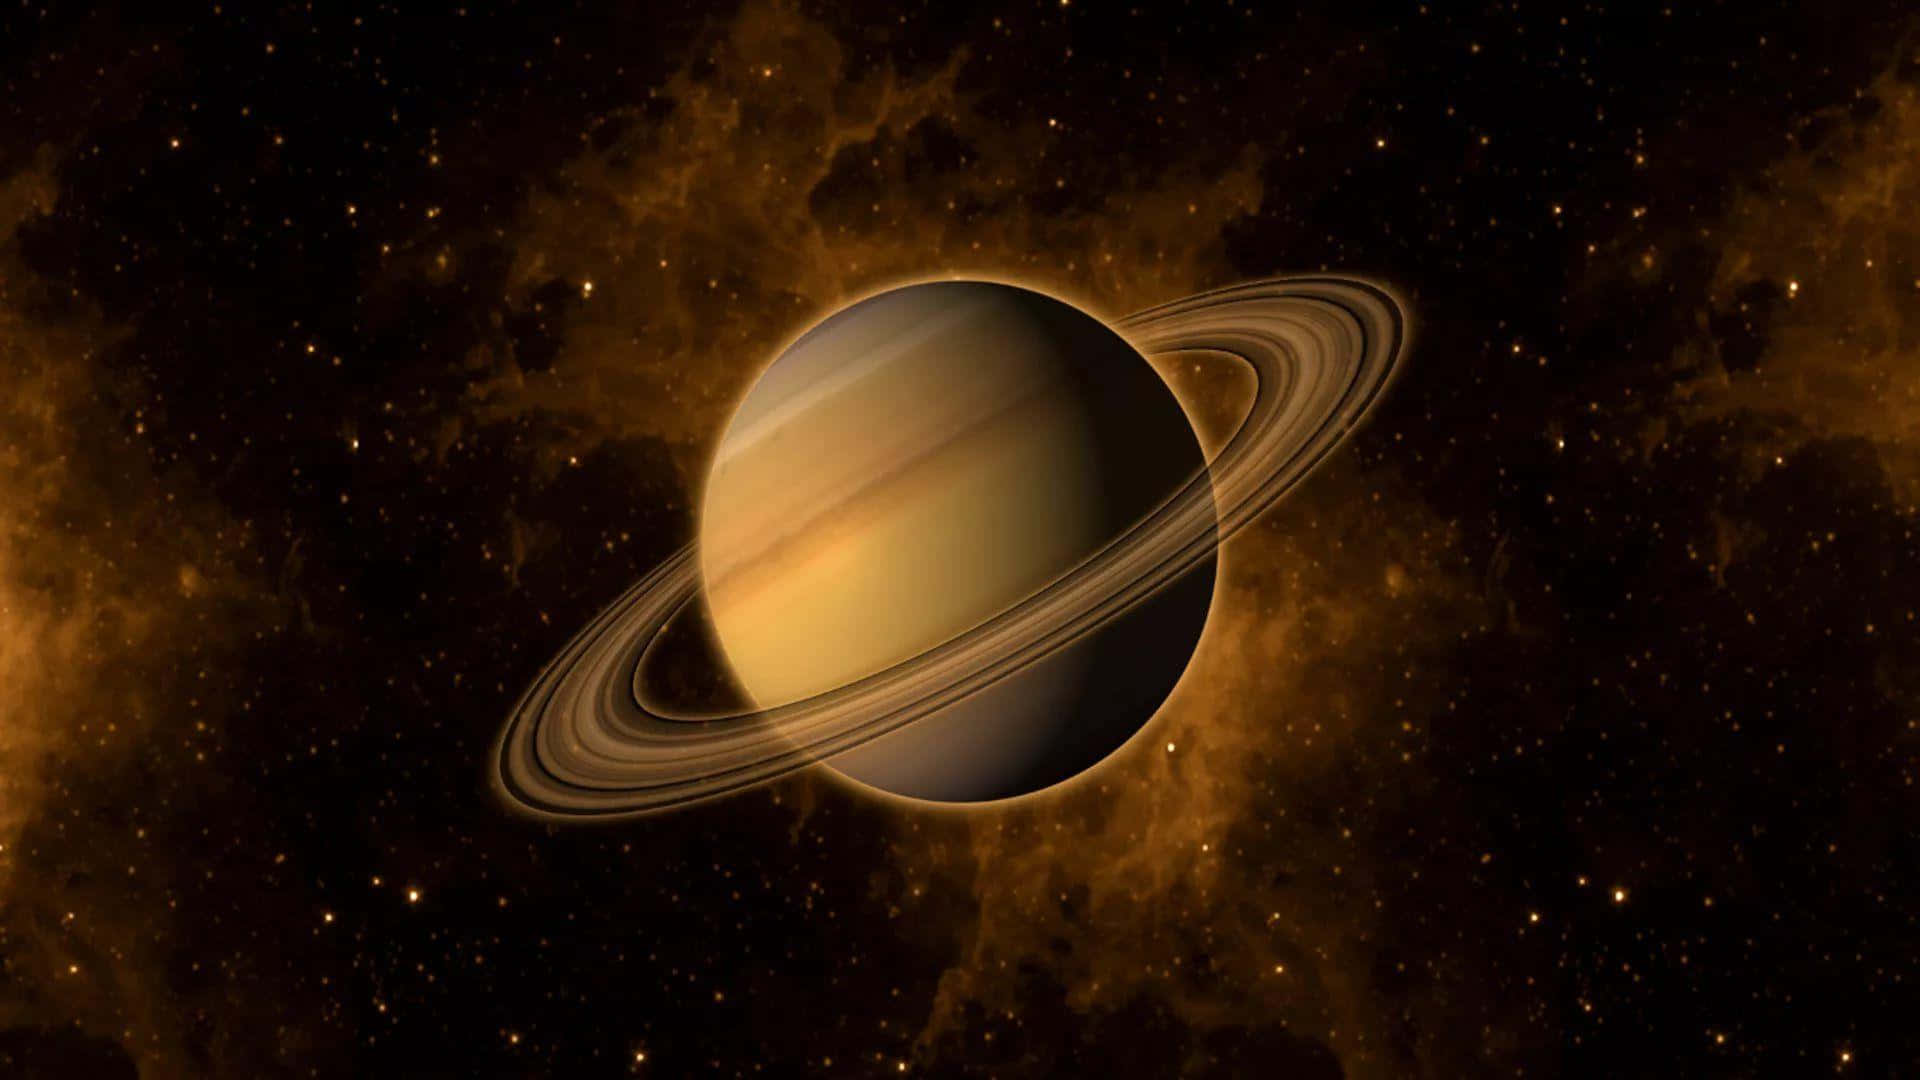 Impresionantevista Del Planeta Saturno Con Sus Gloriosos Anillos.